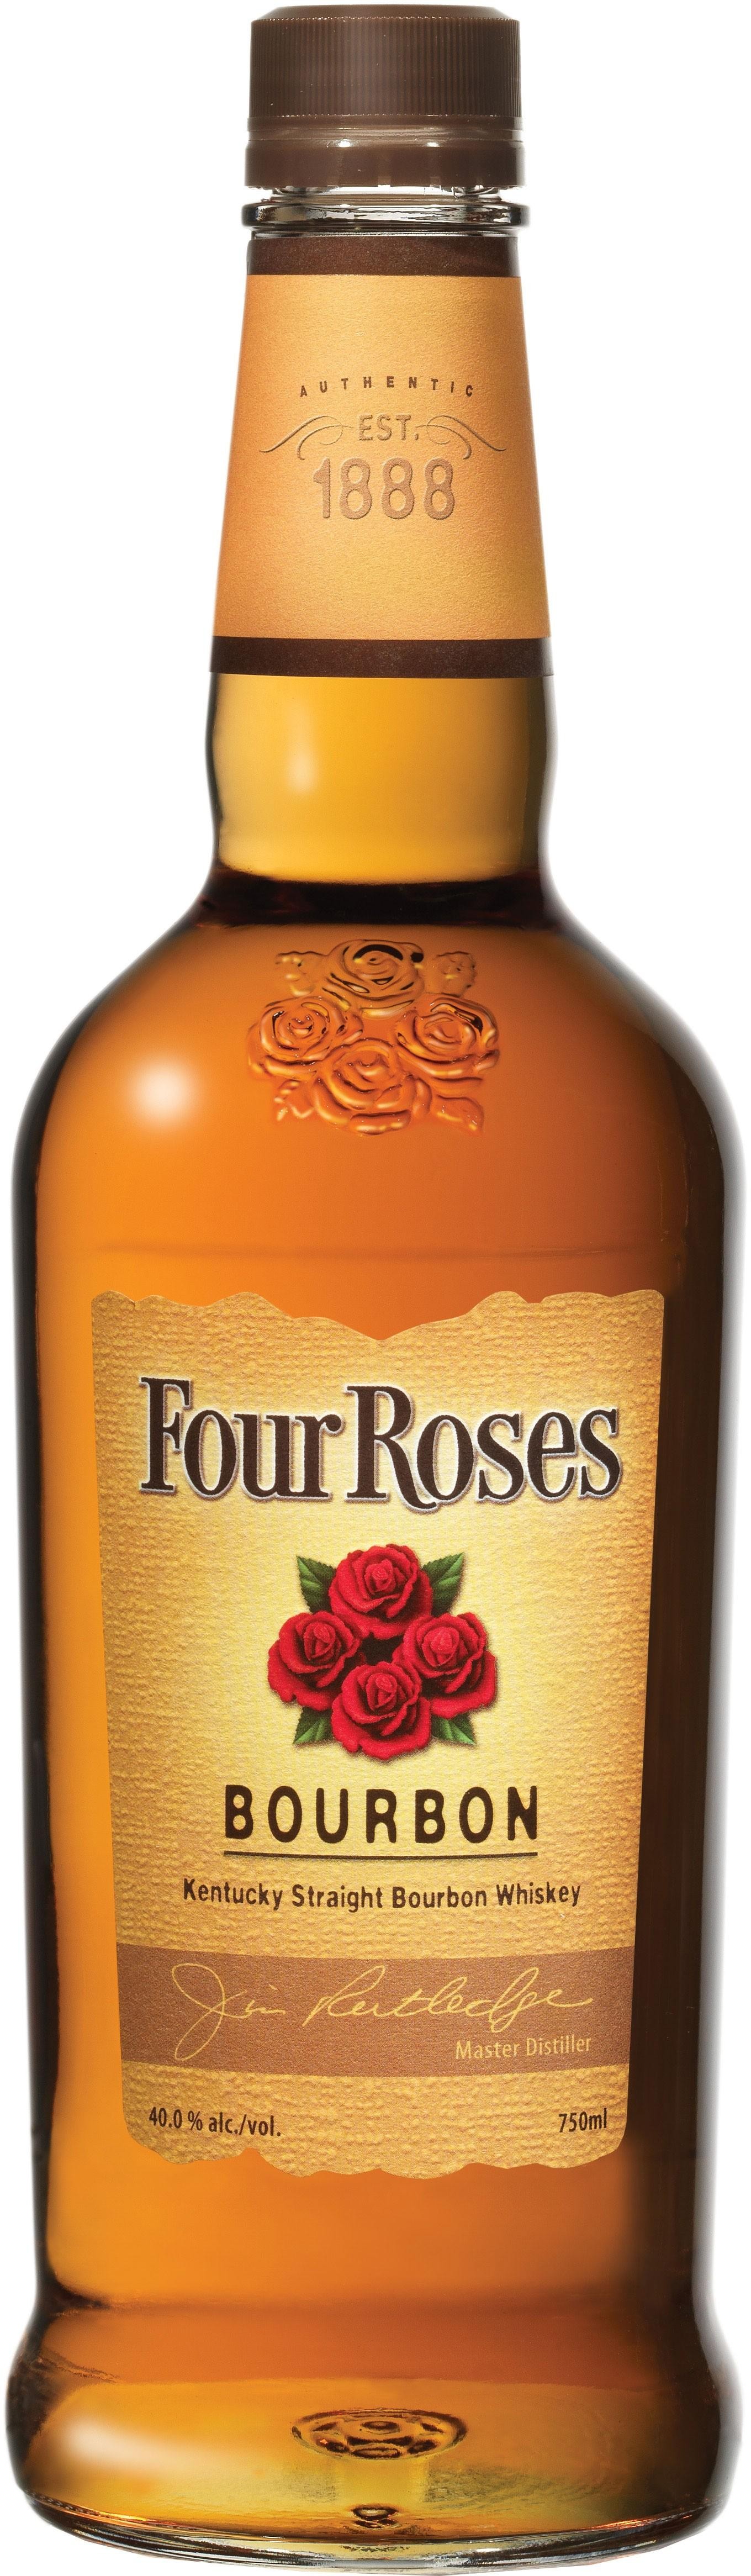 Four Roses, Kentucky Straight Bourbon Whiskey - 750ml Bottle